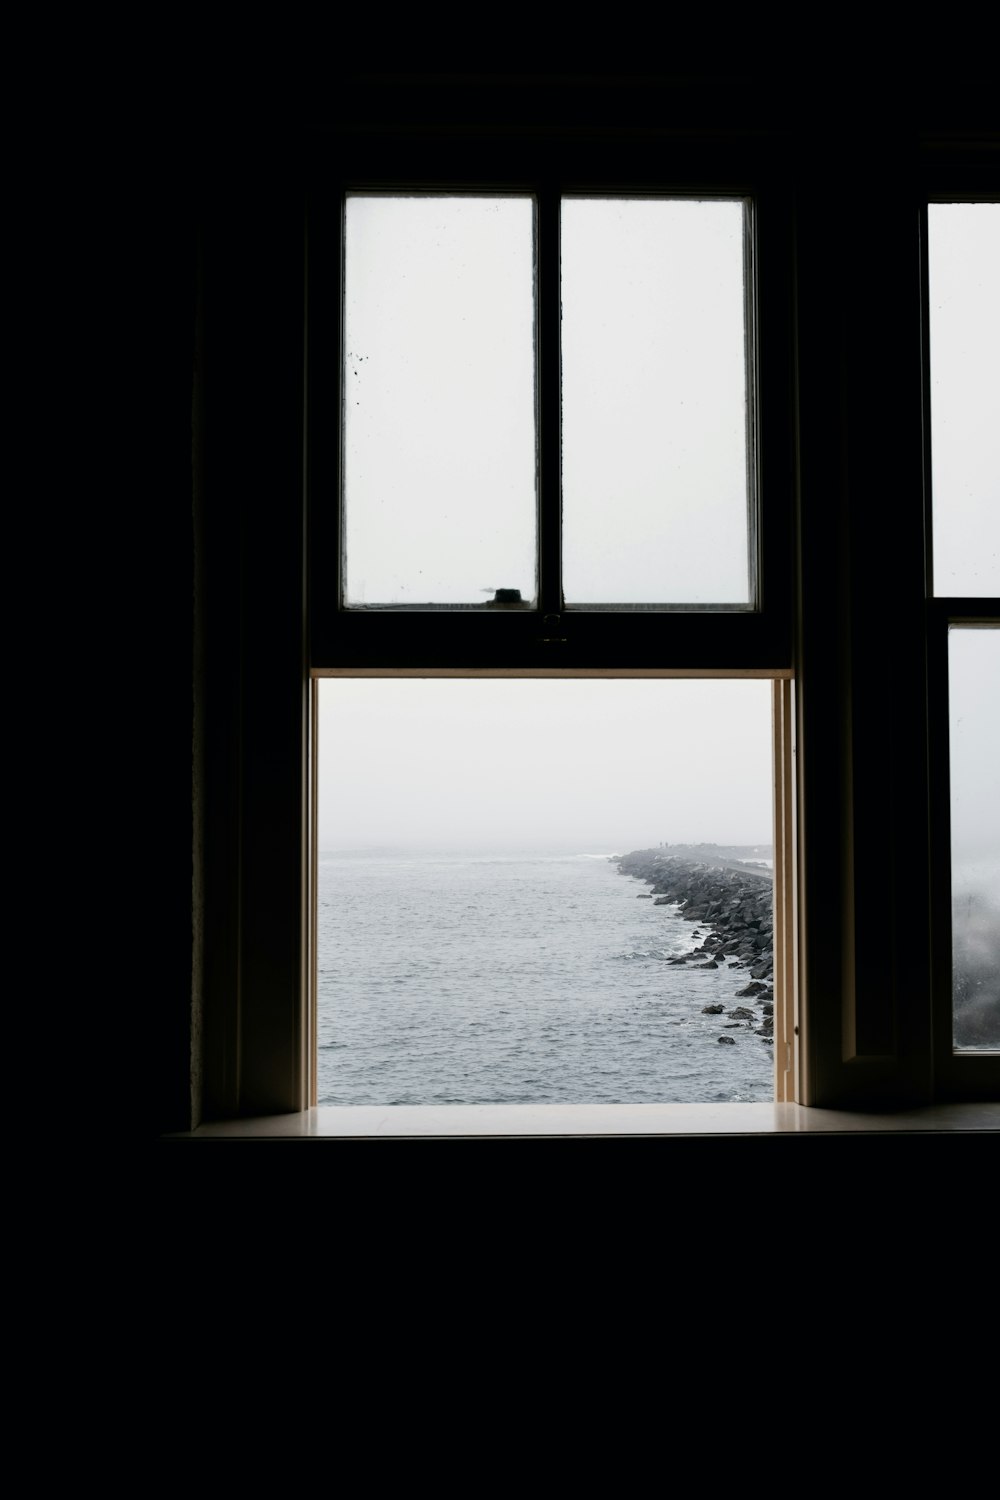 창문에서 바라보는 바다 풍경